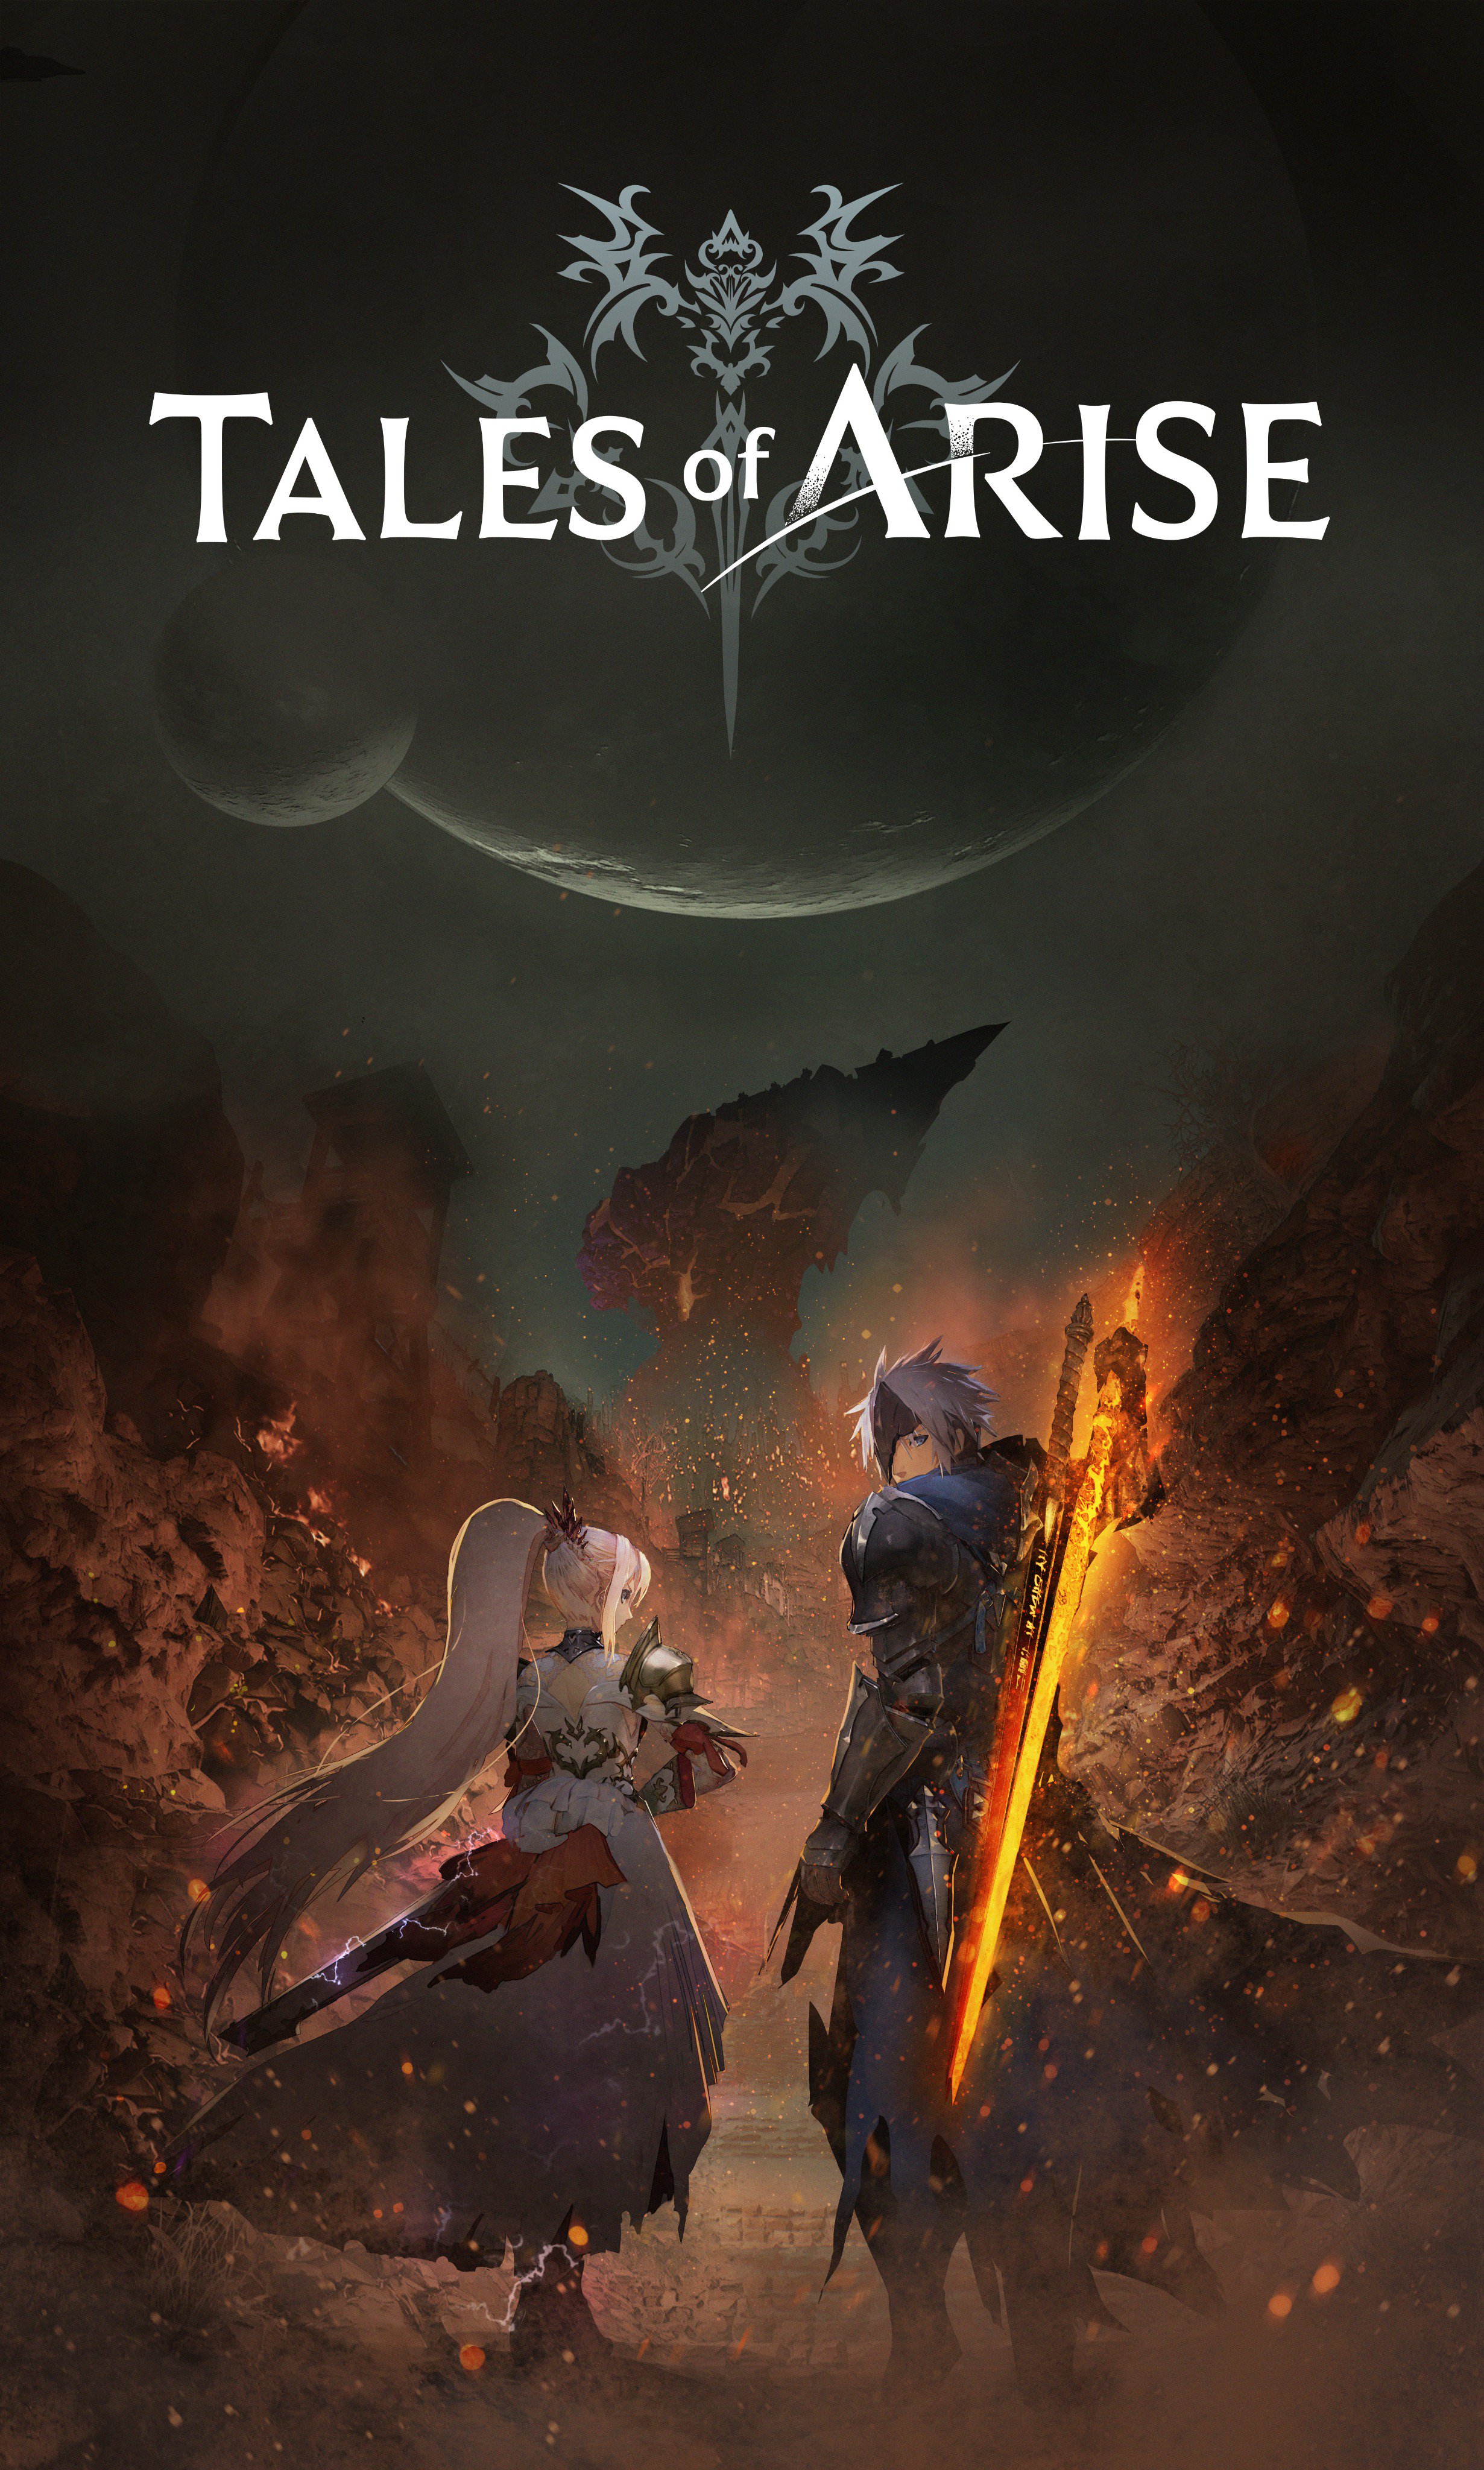 テイルズチャンネル ブログ更新 Tales Of Arise テイルズ オブ アライズ 発表にあたって Toarise T Co Ze4vldkc1a